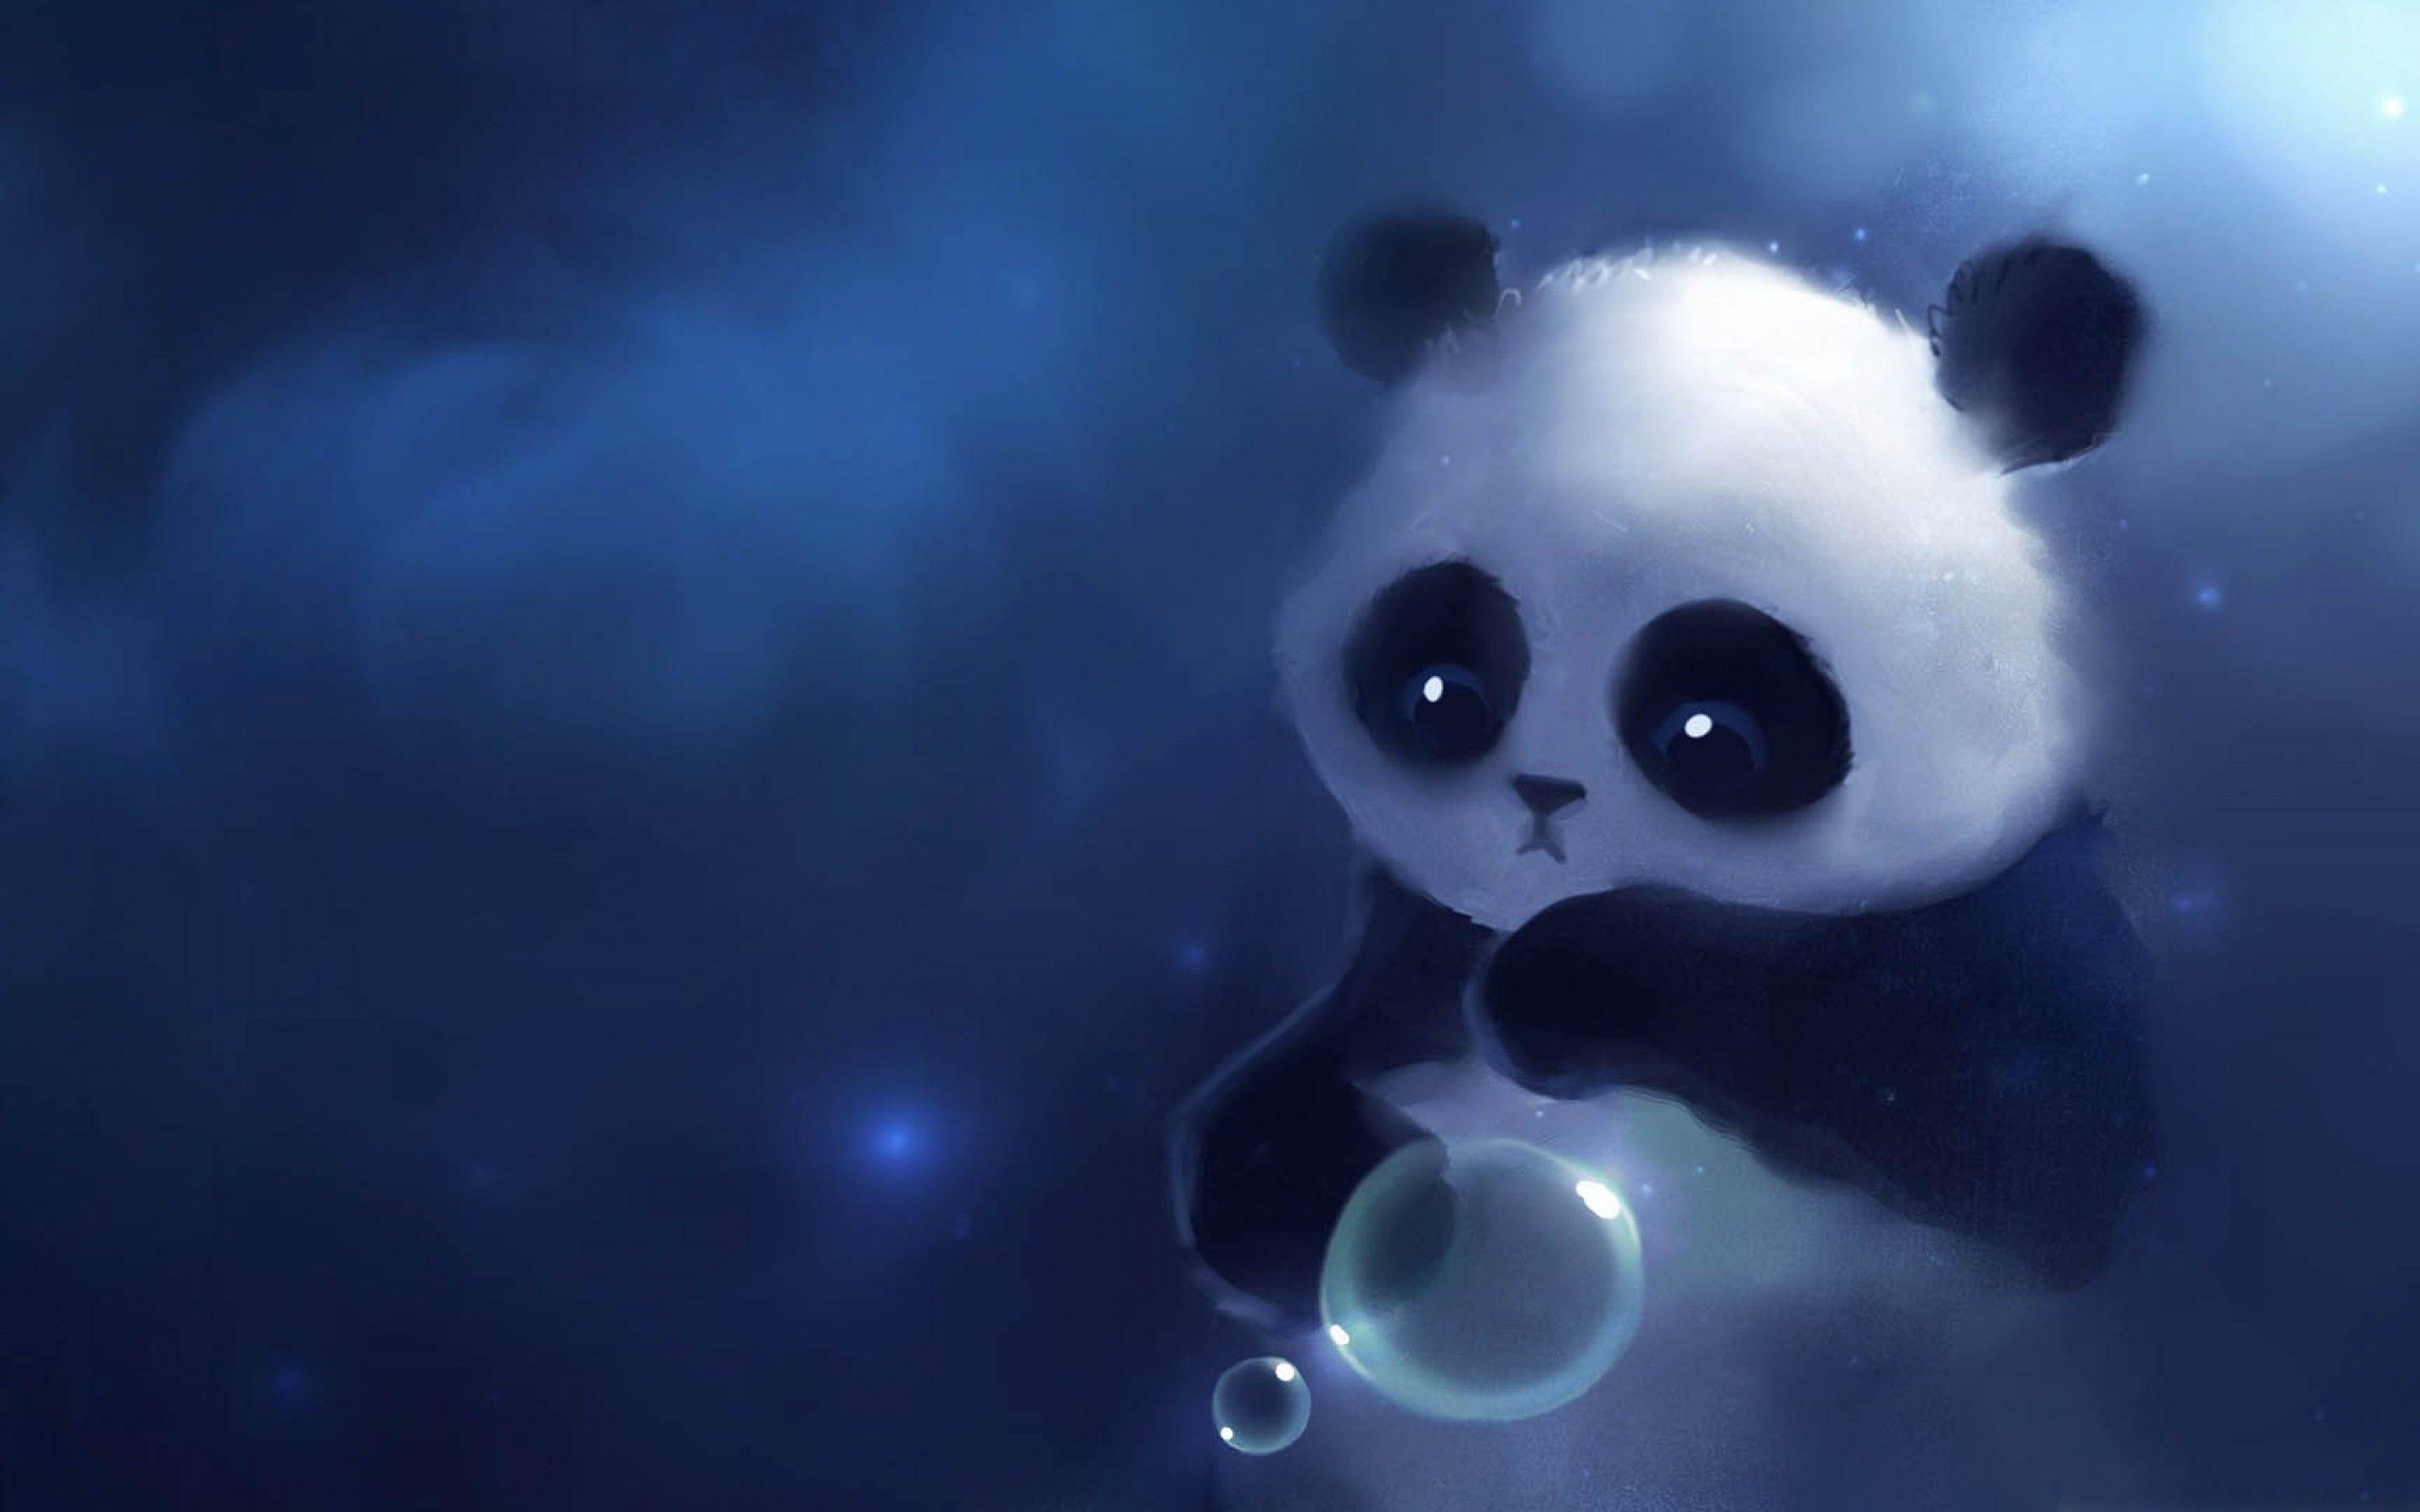 Sad Cute Panda Cartoon Wallpaper. Bjørne. Cartoon